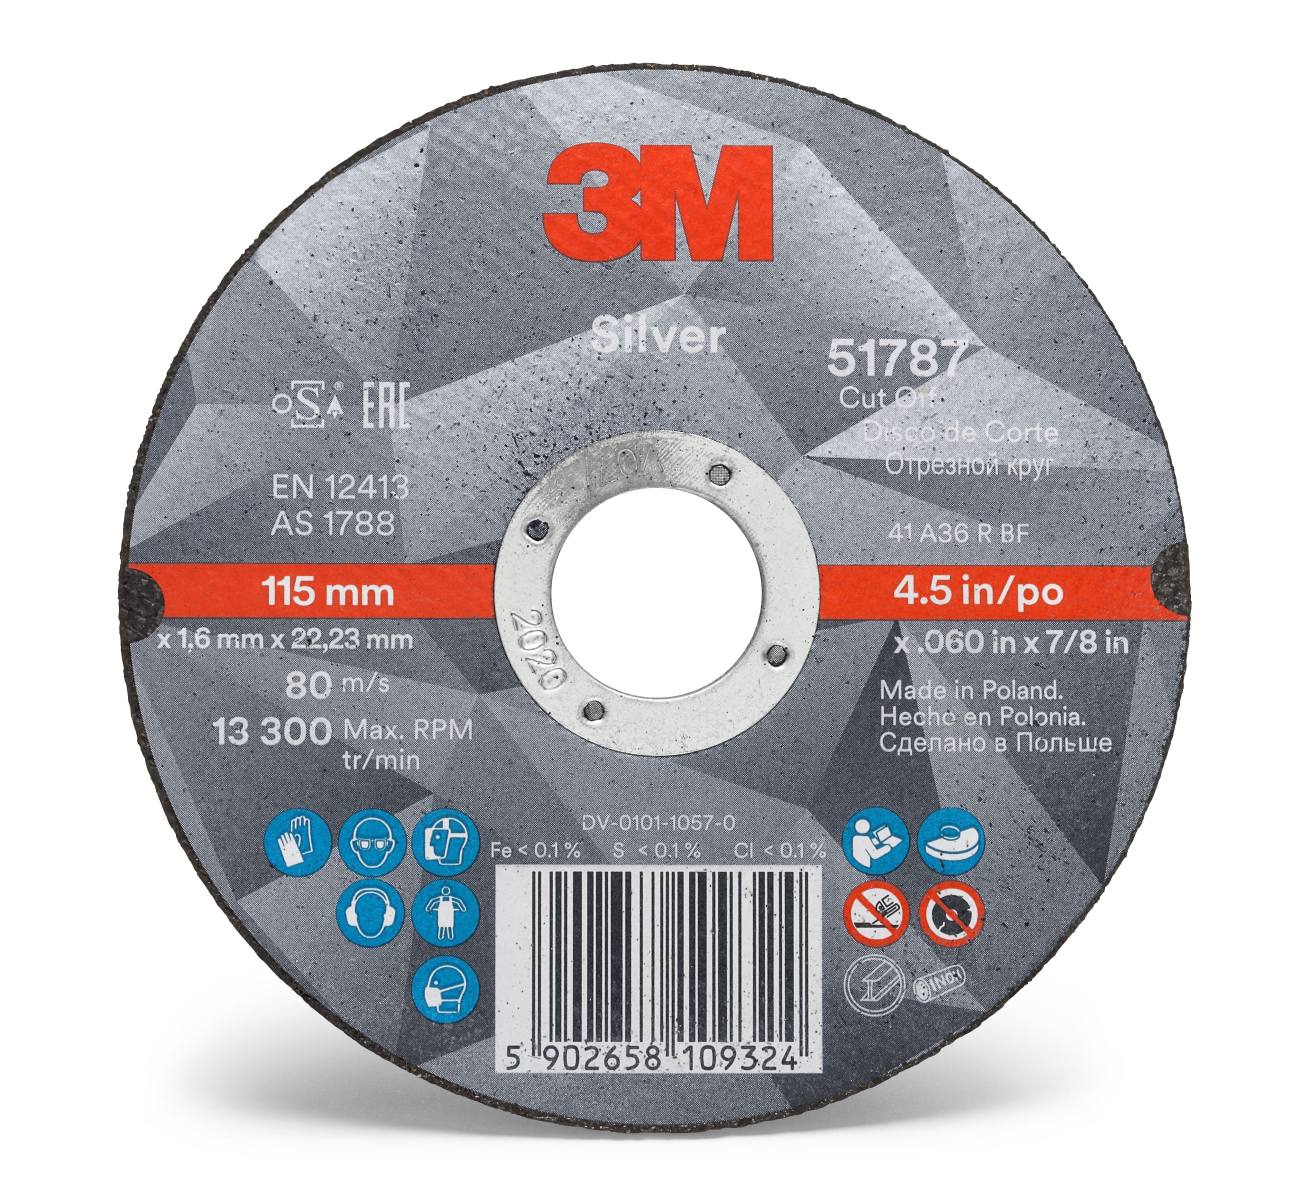 3M Silver Cut-Off Wheel cutting-off wheel, 125 mm, 1.0 mm, 22.23 mm, T41, 51790